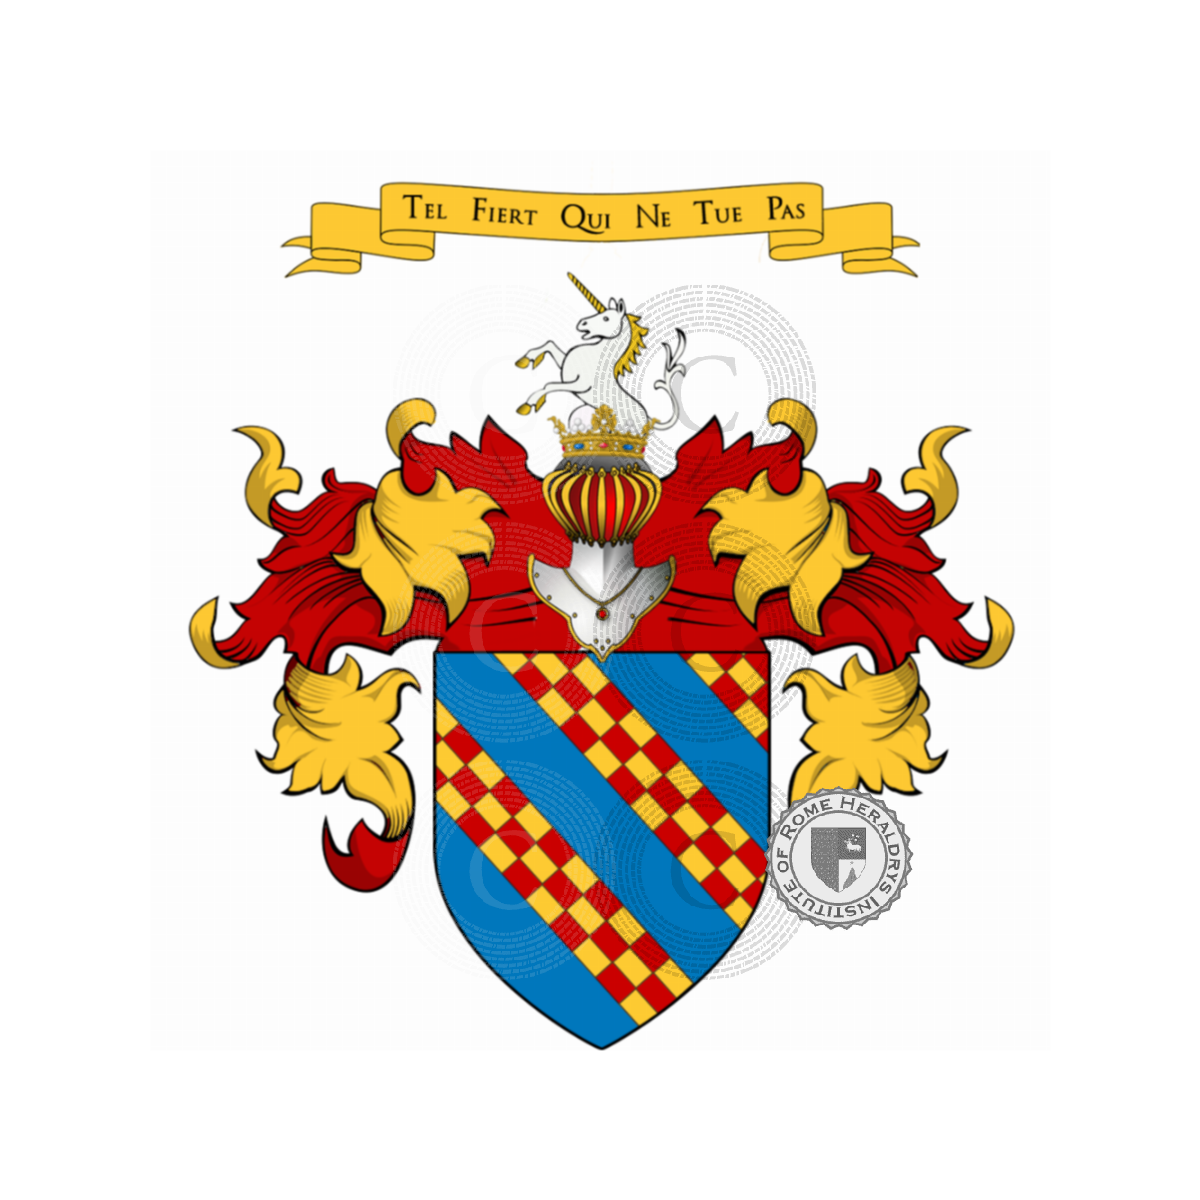 Wappen der FamilieSolari, Solaro